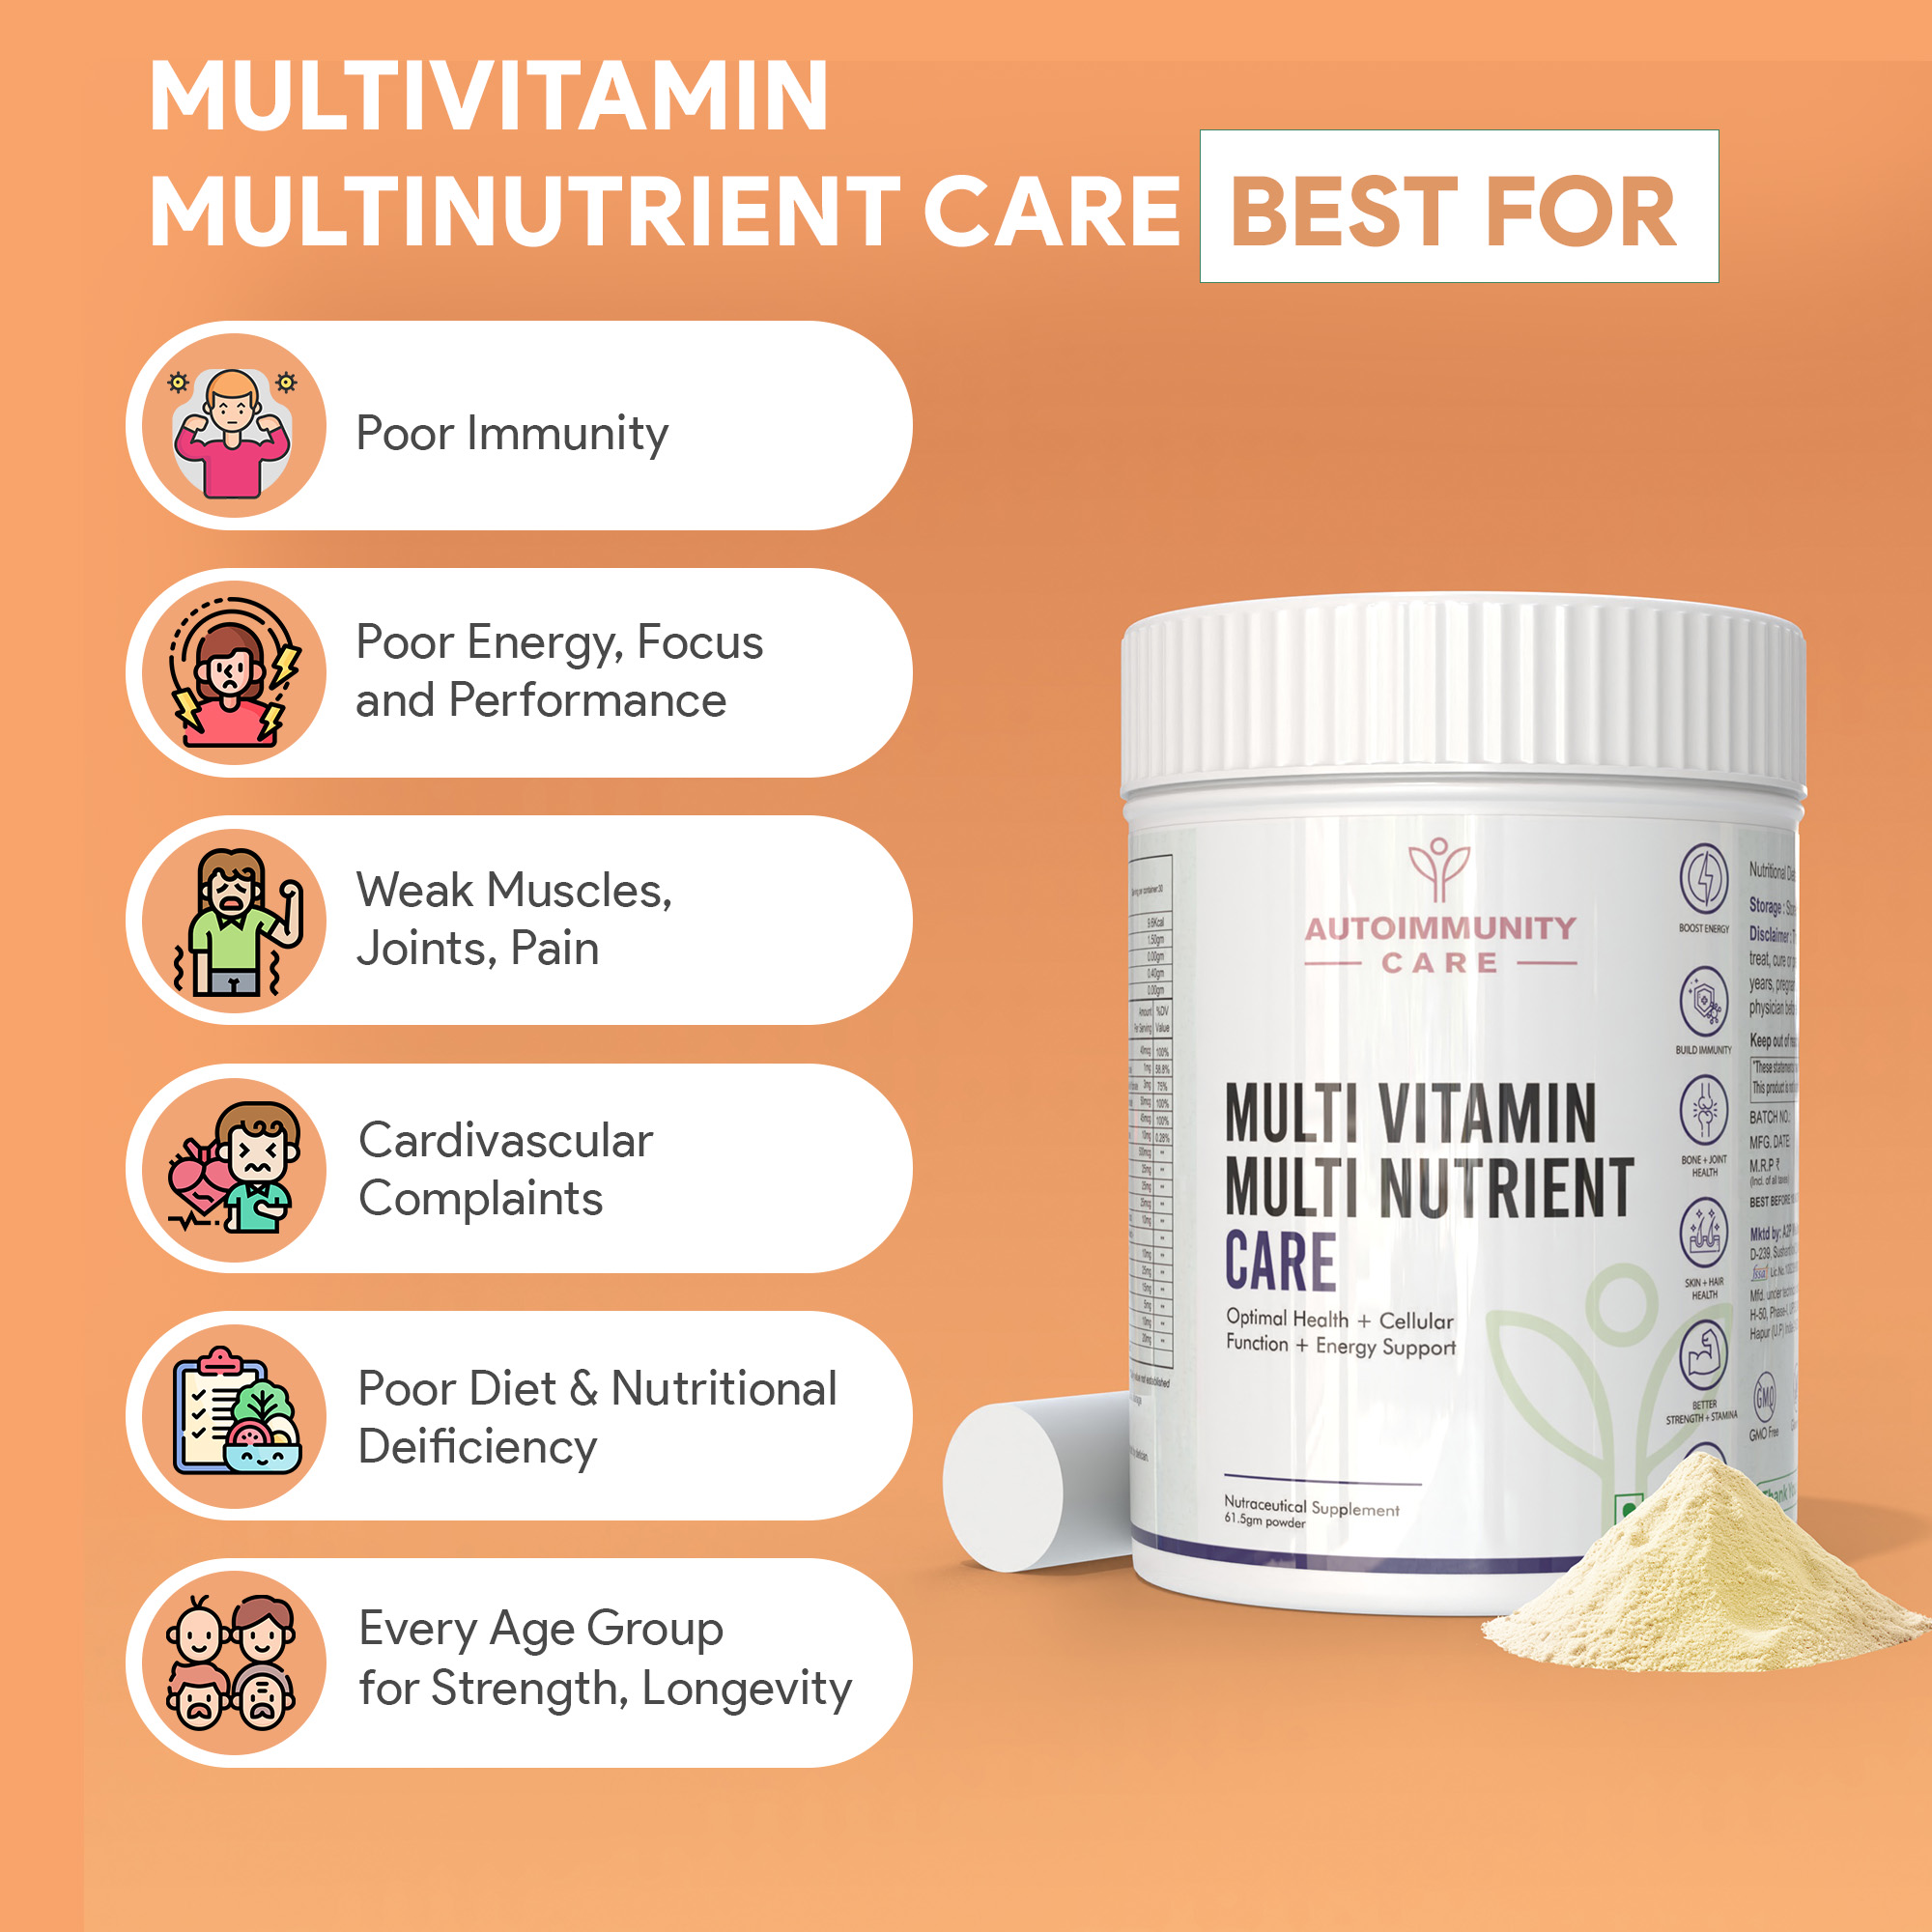 Autoimmunity Care Multi Vitamin Multi Nutrient Care